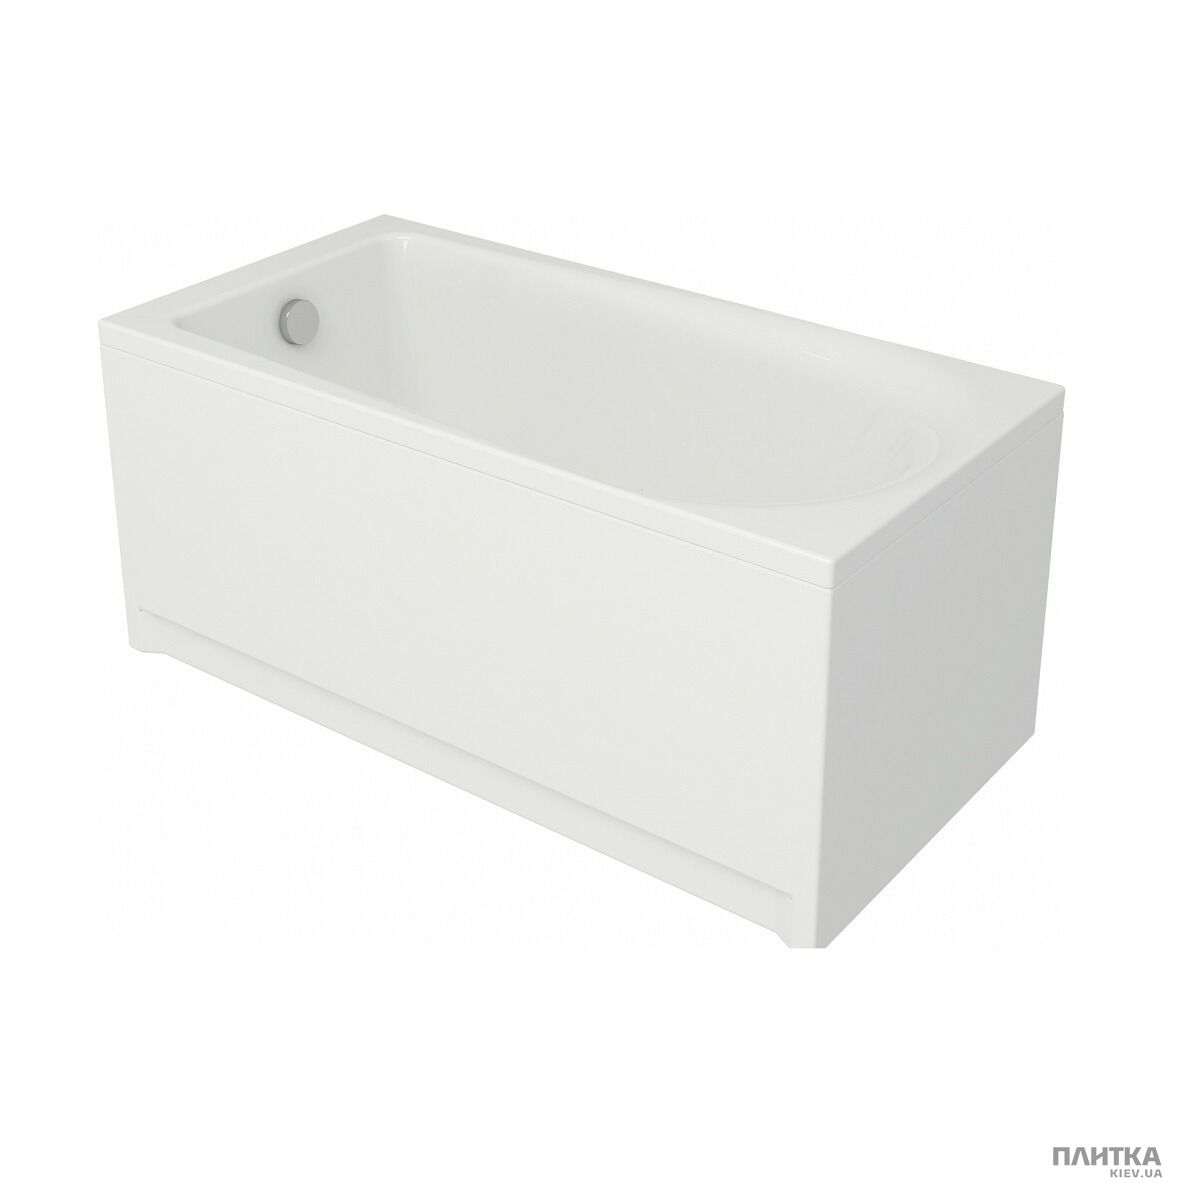 Акрилова ванна Cersanit Flavia FLAVIA Ванна 150x70 COVER+ білий